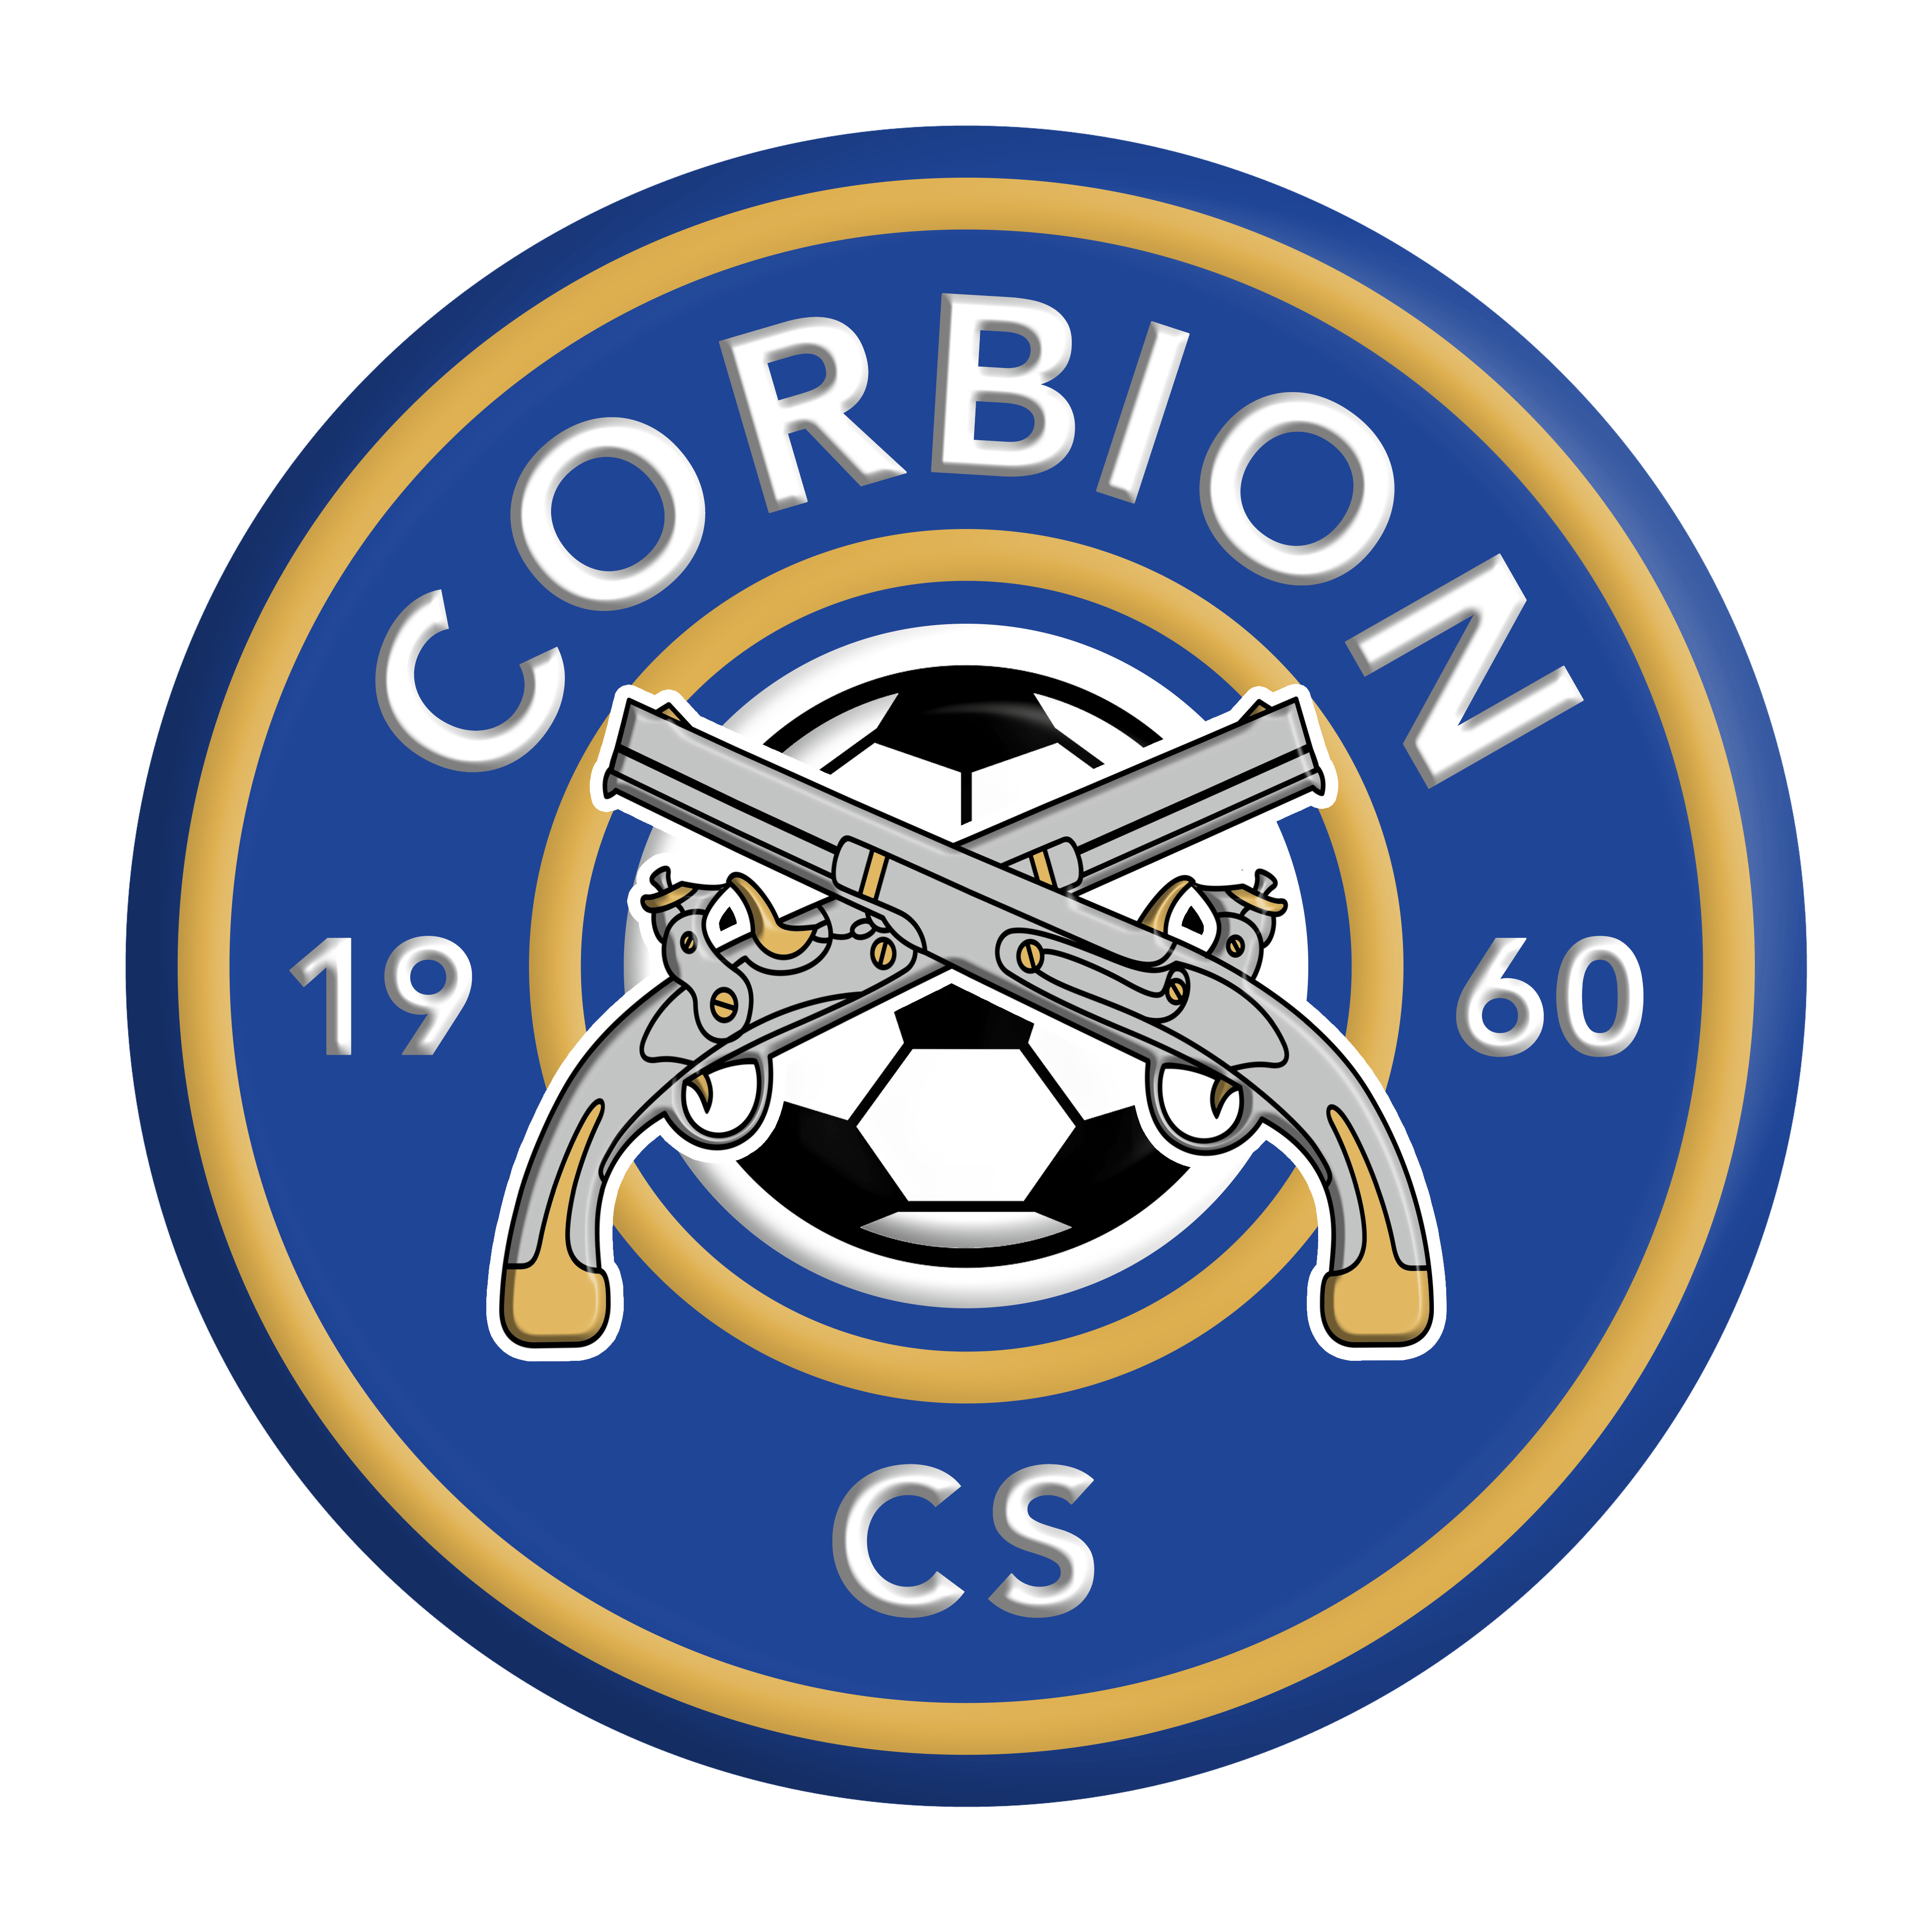 10 - Corbion